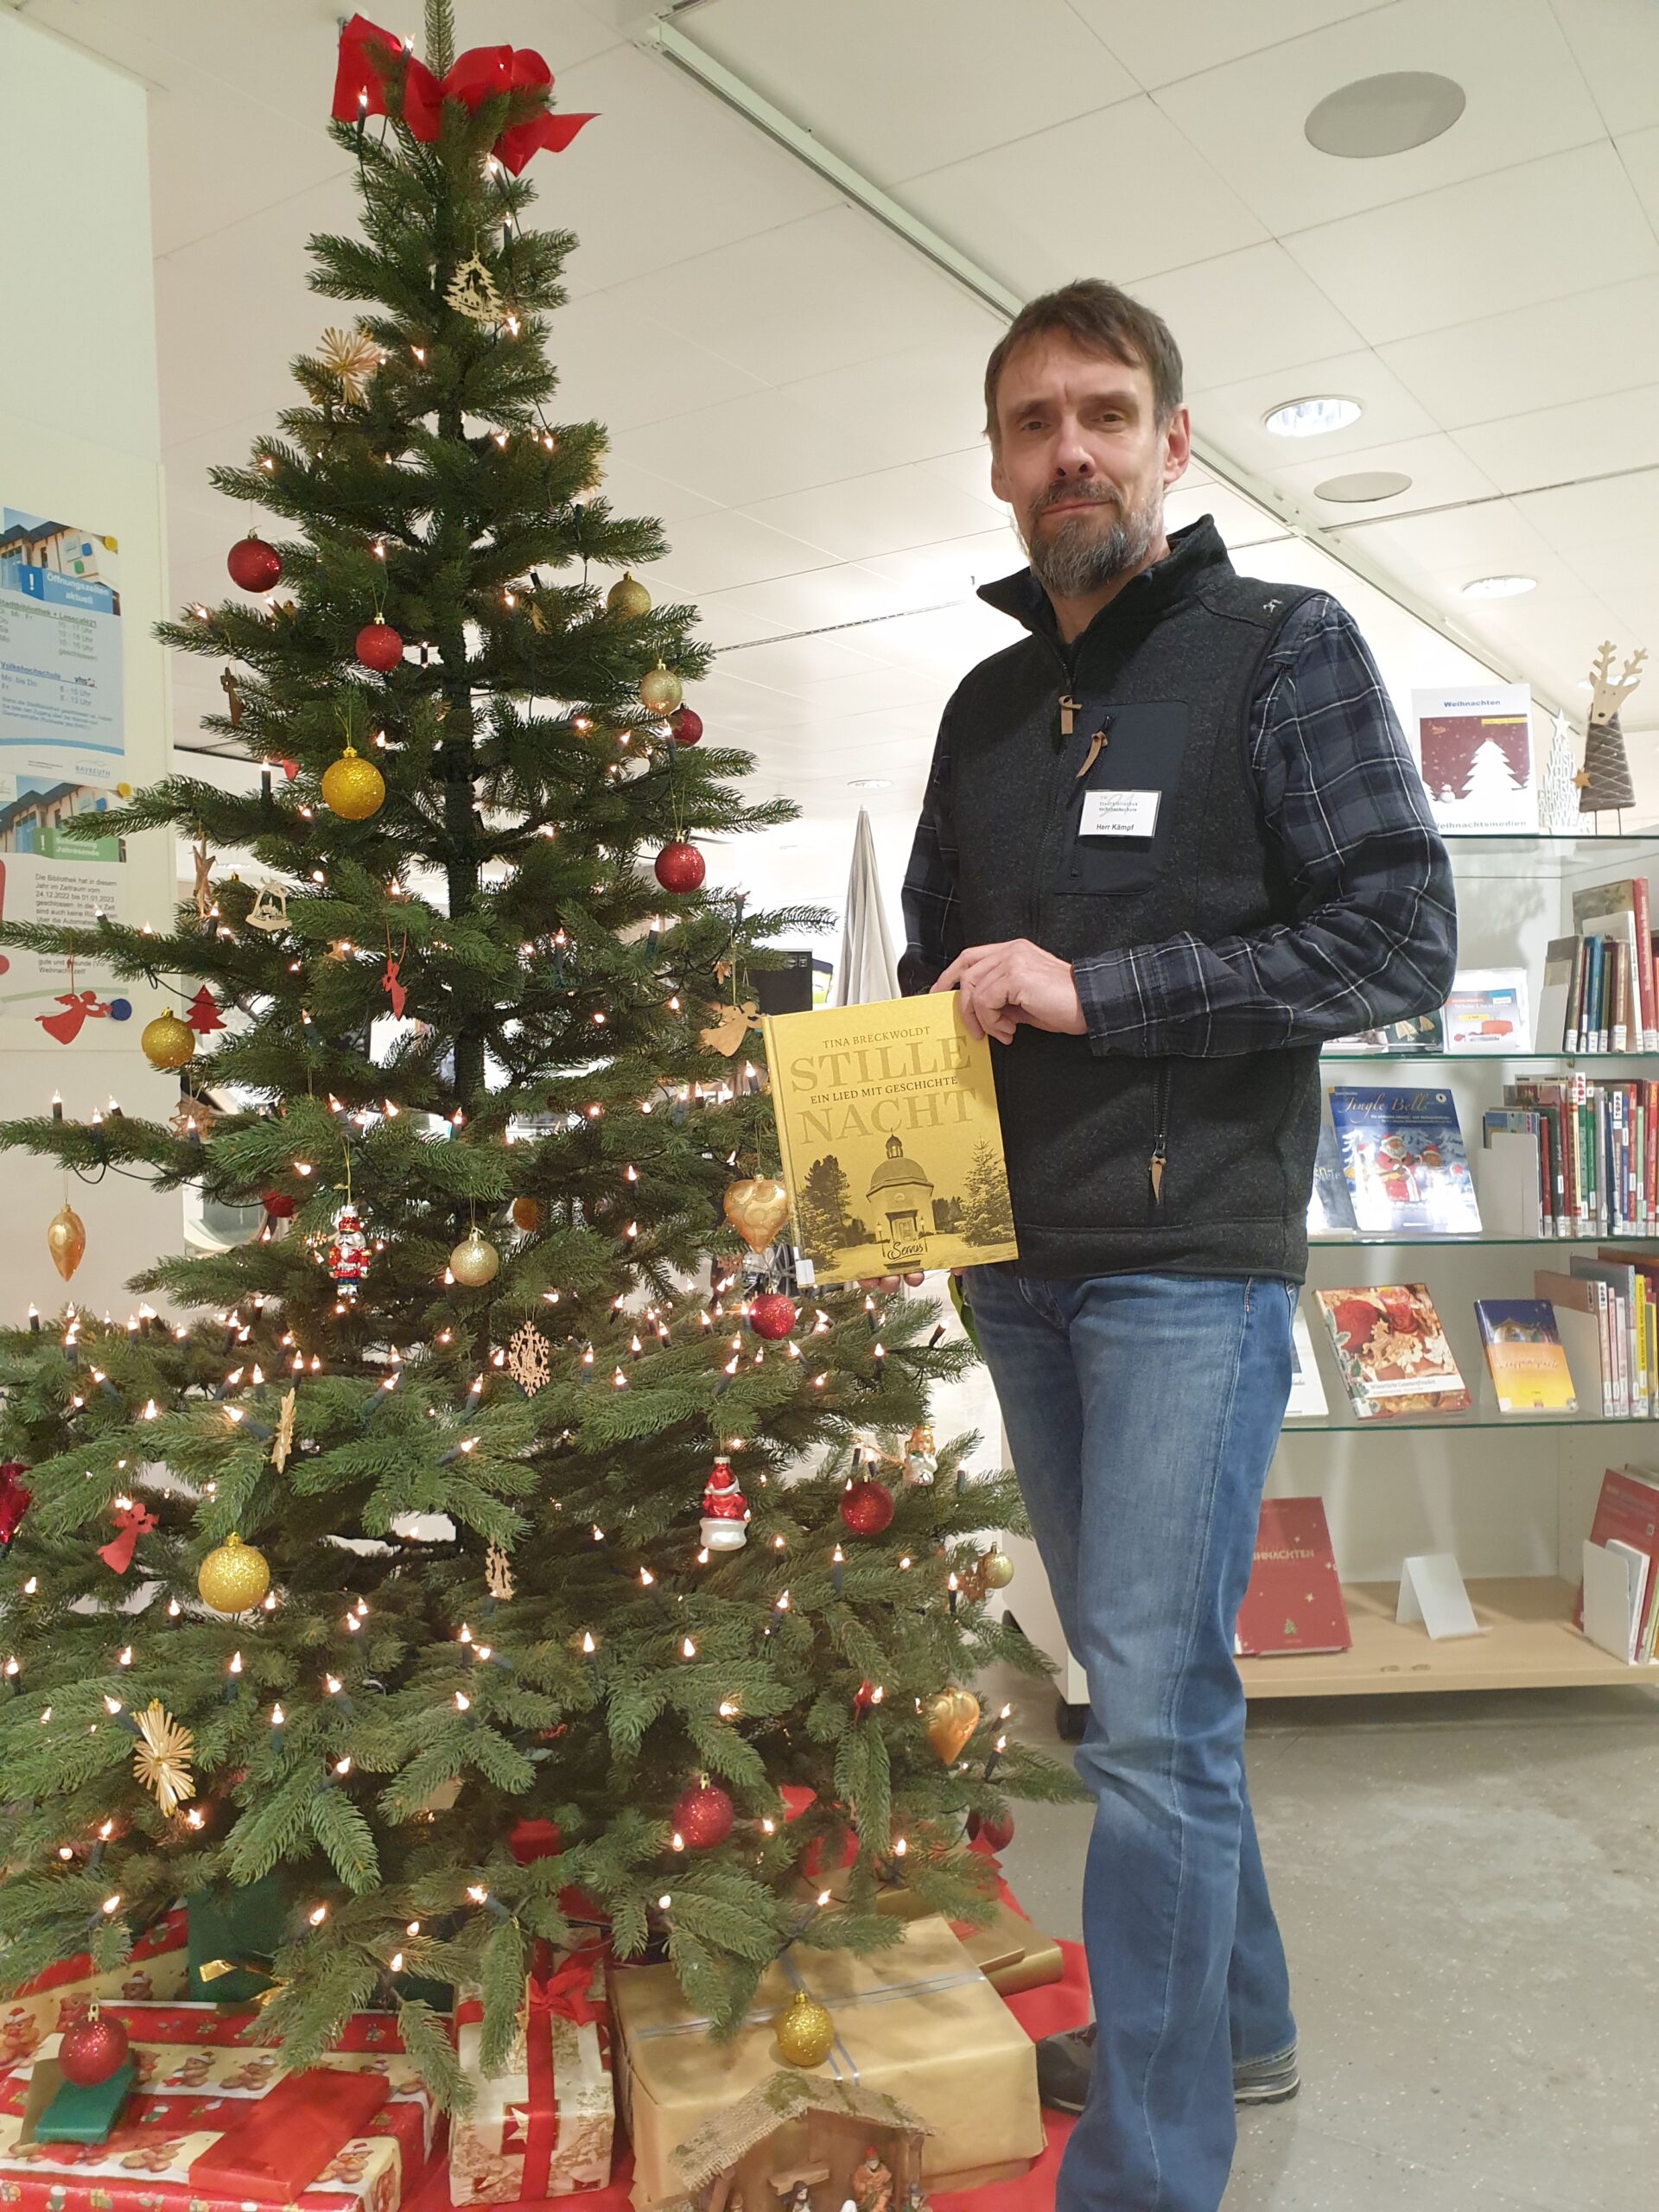 Bibliotheksmitarbeiter steht vor geschmücktem Weihnachtsbaum und hält ein Buch in den Händen.